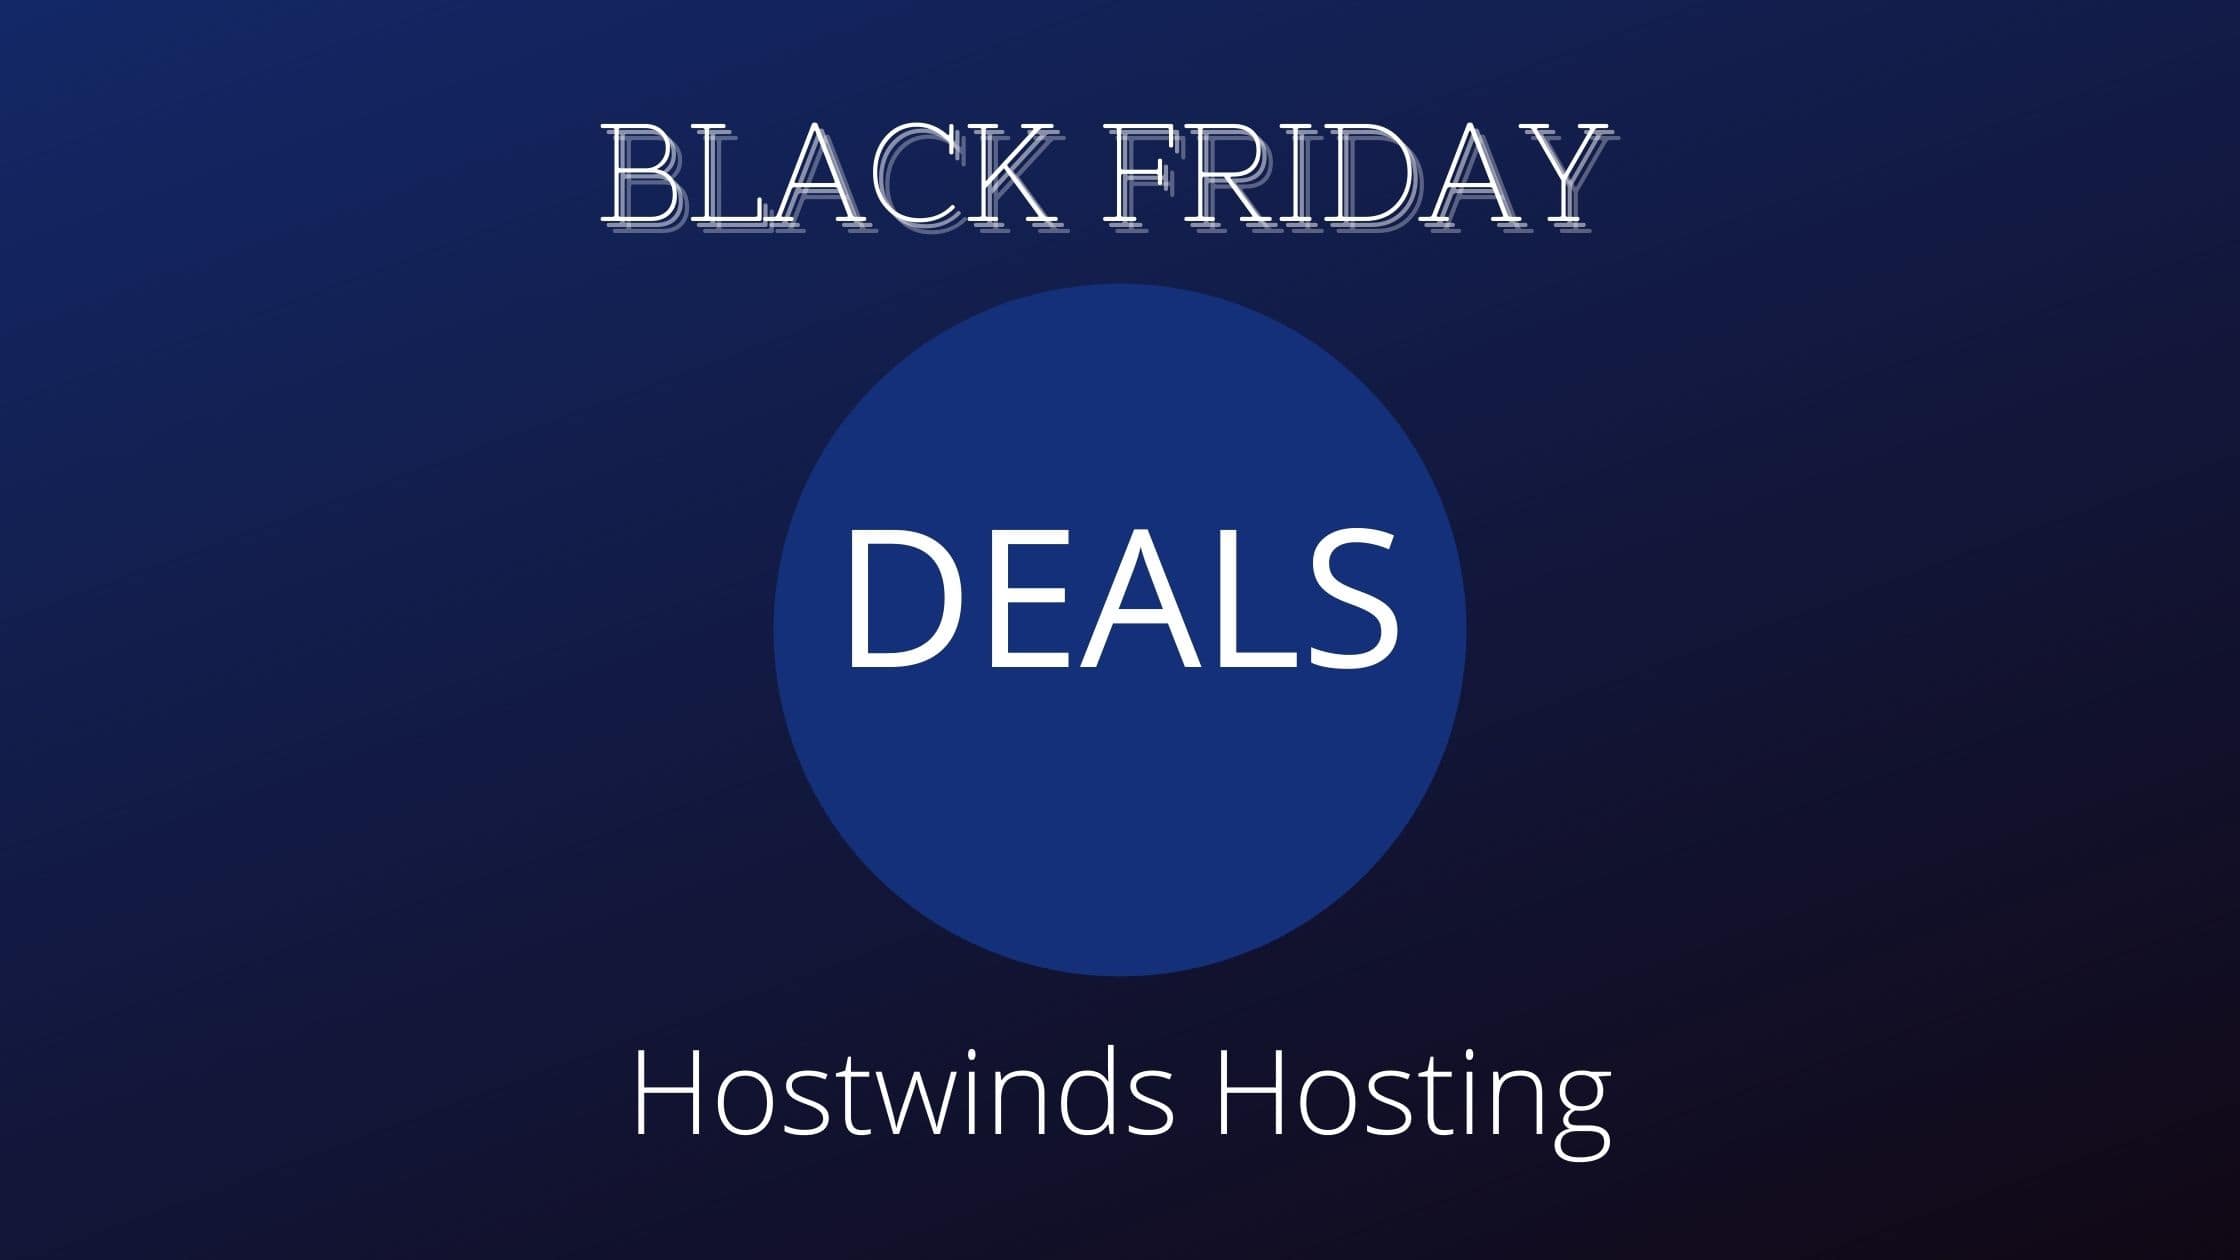 Hostwinds Black Friday Deals 2021: Get Upto 80% Off image